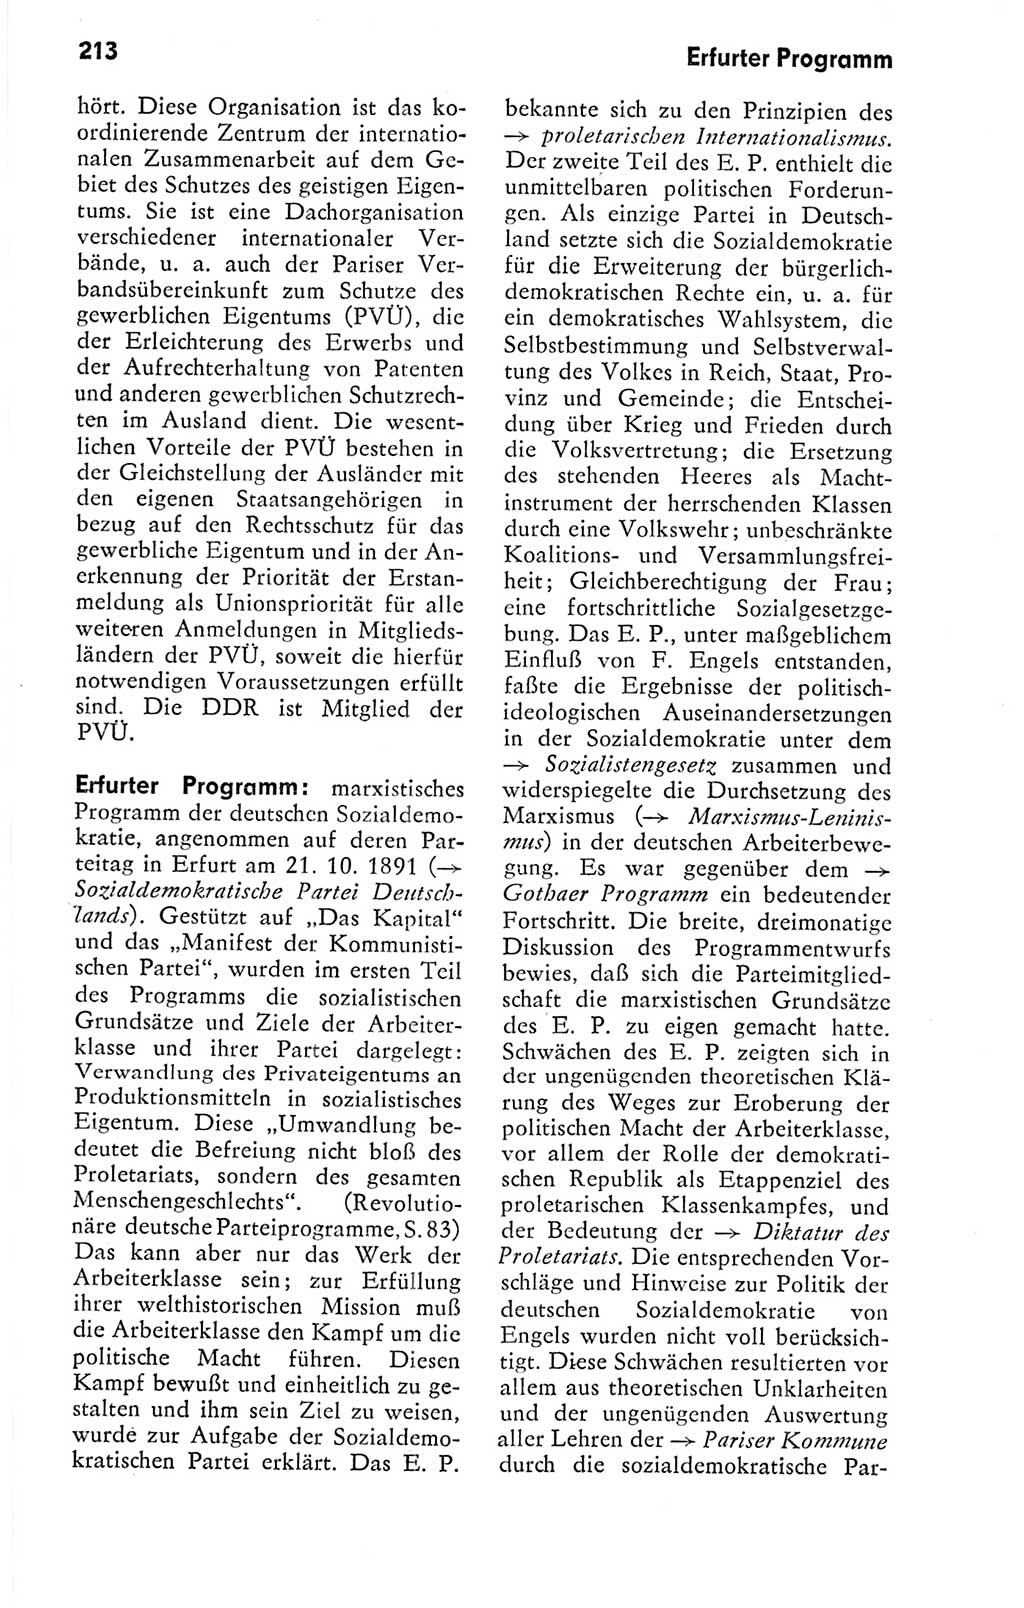 Kleines politisches Wörterbuch [Deutsche Demokratische Republik (DDR)] 1978, Seite 213 (Kl. pol. Wb. DDR 1978, S. 213)